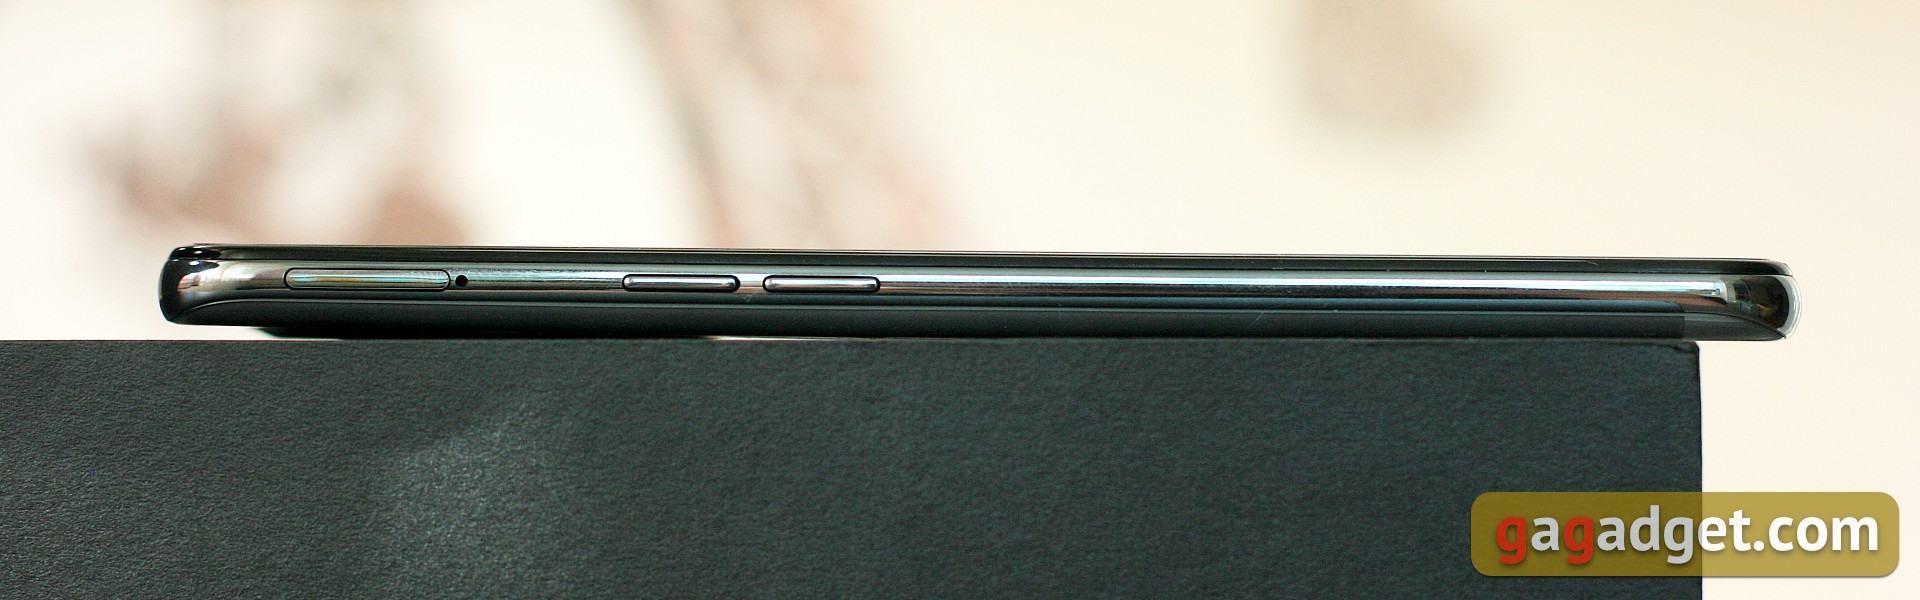 Oneplus Nord CE 2 5G review: een goed gevulde smartphone voor 305 dollar-7